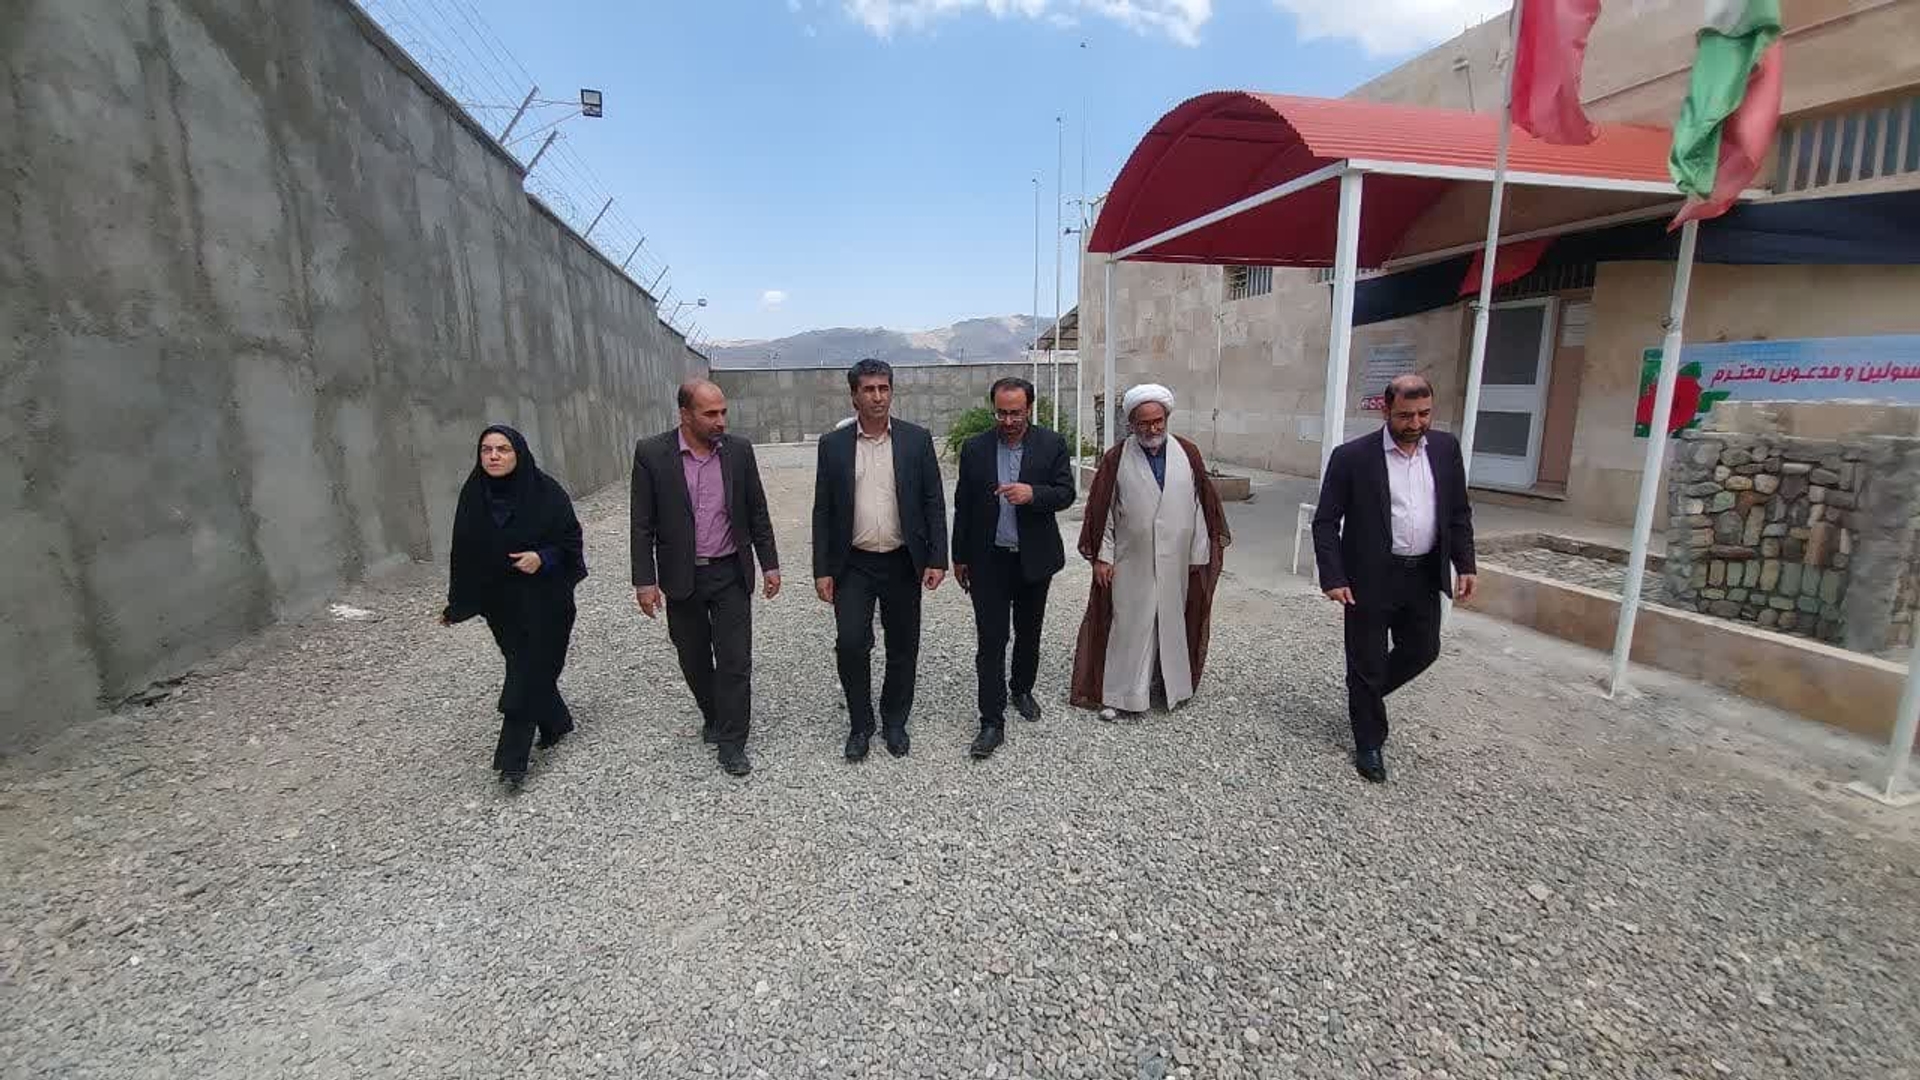 جواد اتابکی سرپرست فرمانداری به اتفاق میرکاظمی رئیس زندان و جمعی از مسئولین از شرایط زندان و امکانات درمانی، آموزشی برای سربازان و زندانیان بازدید کرد.